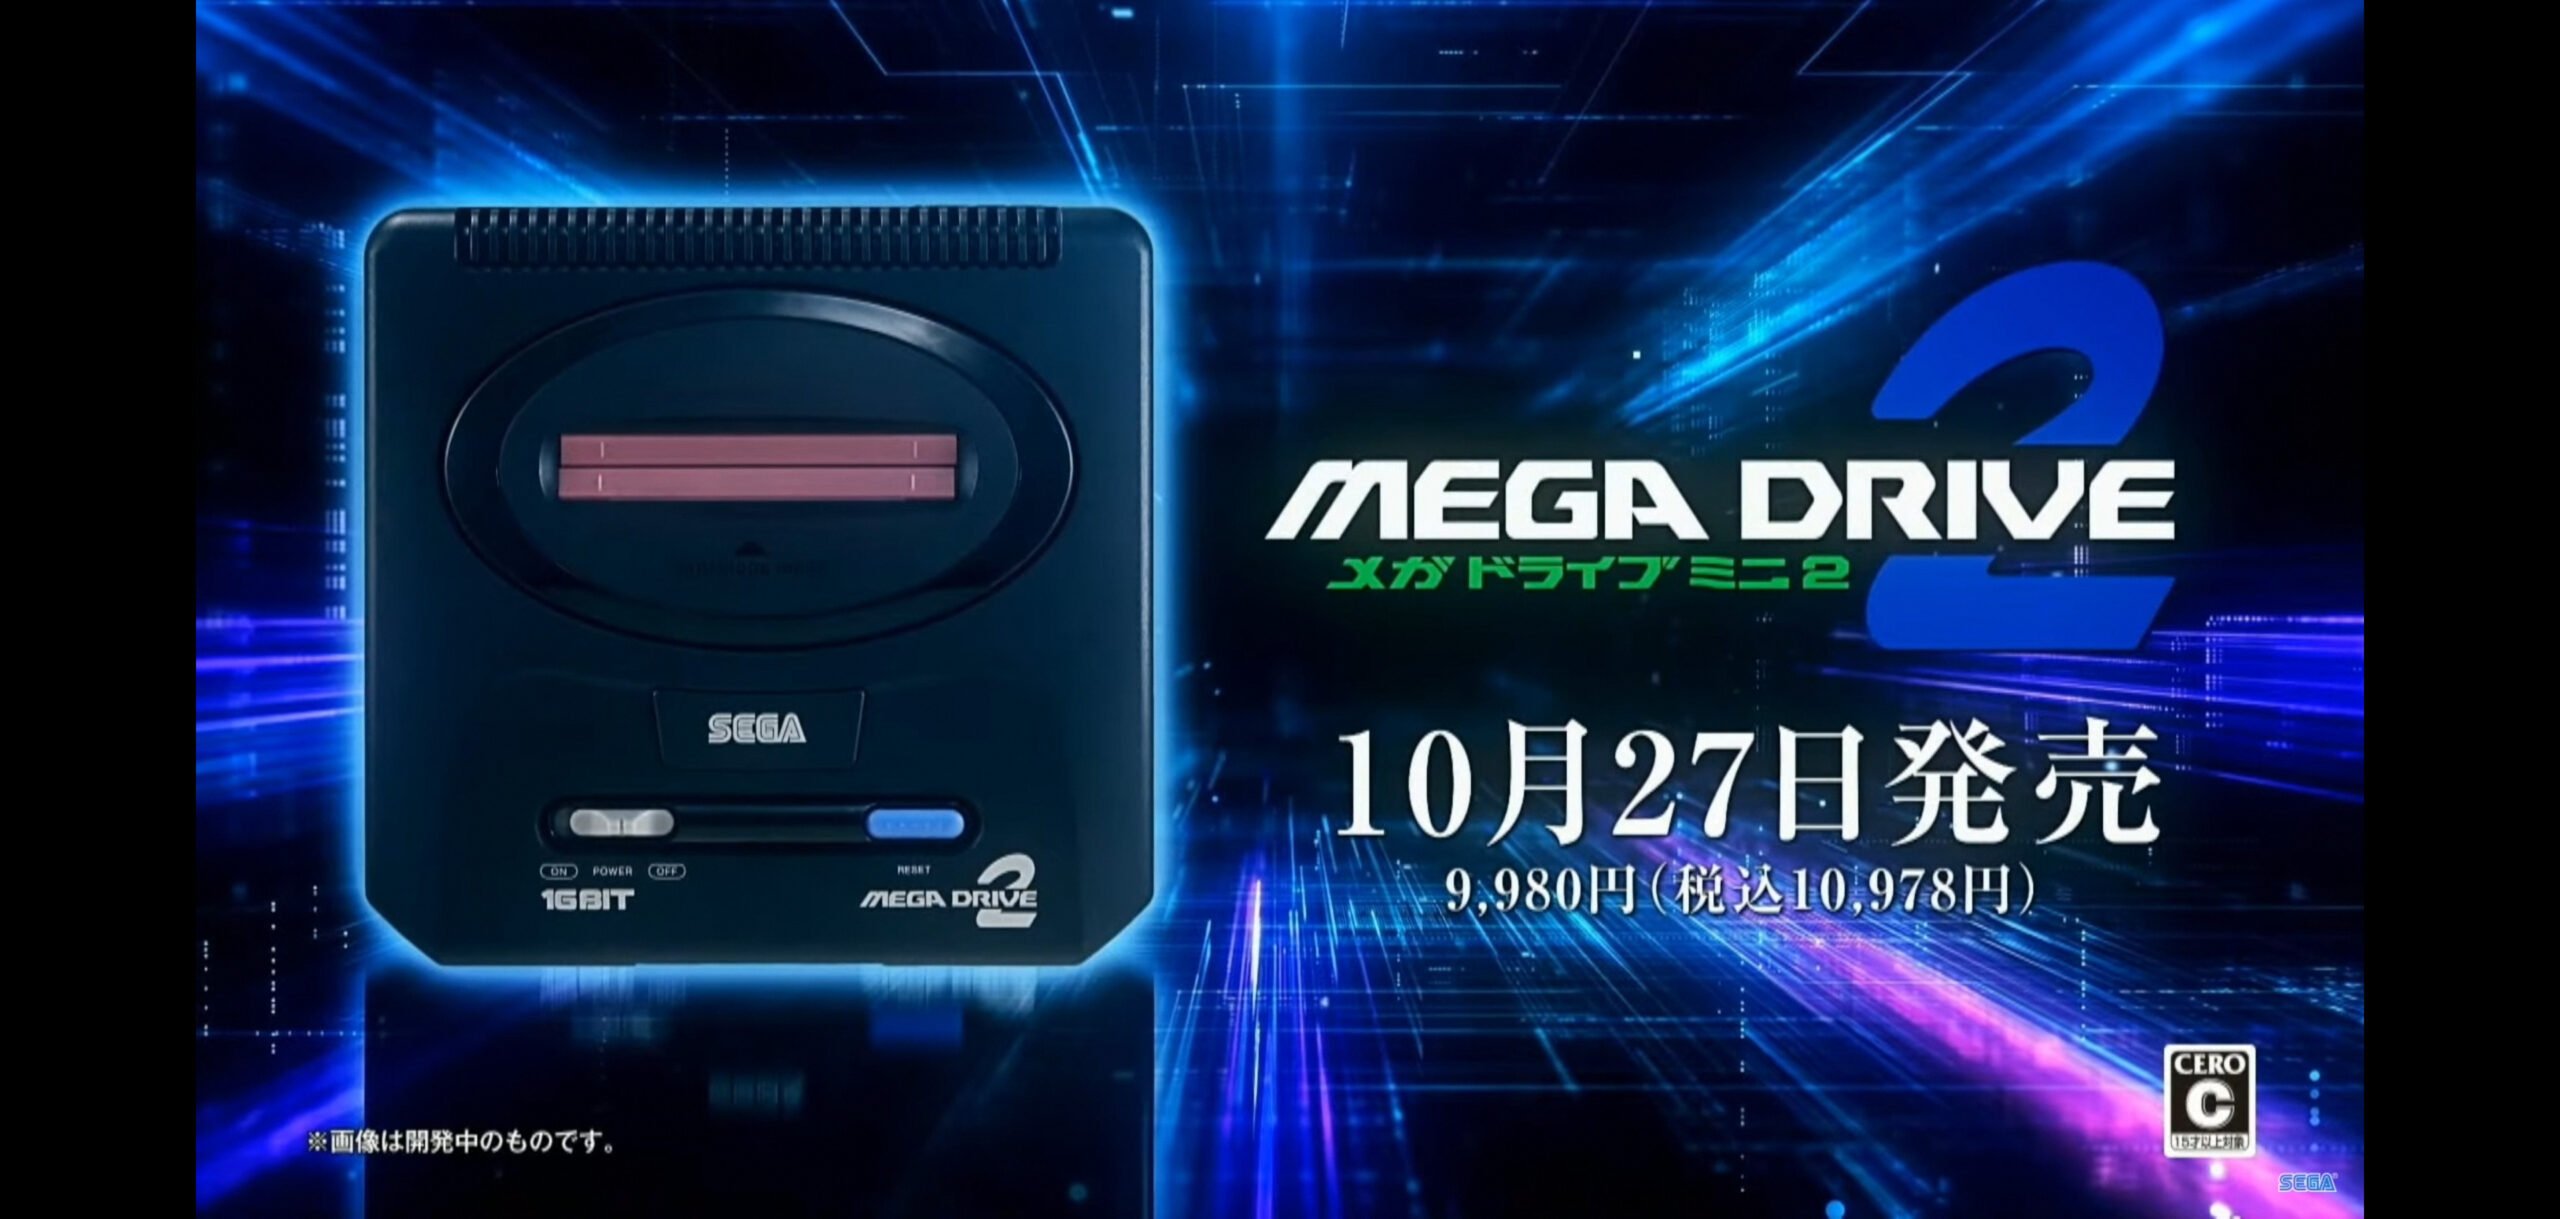 Sega has announced a Mega Drive Mini 2, including Mega CD games | VGC